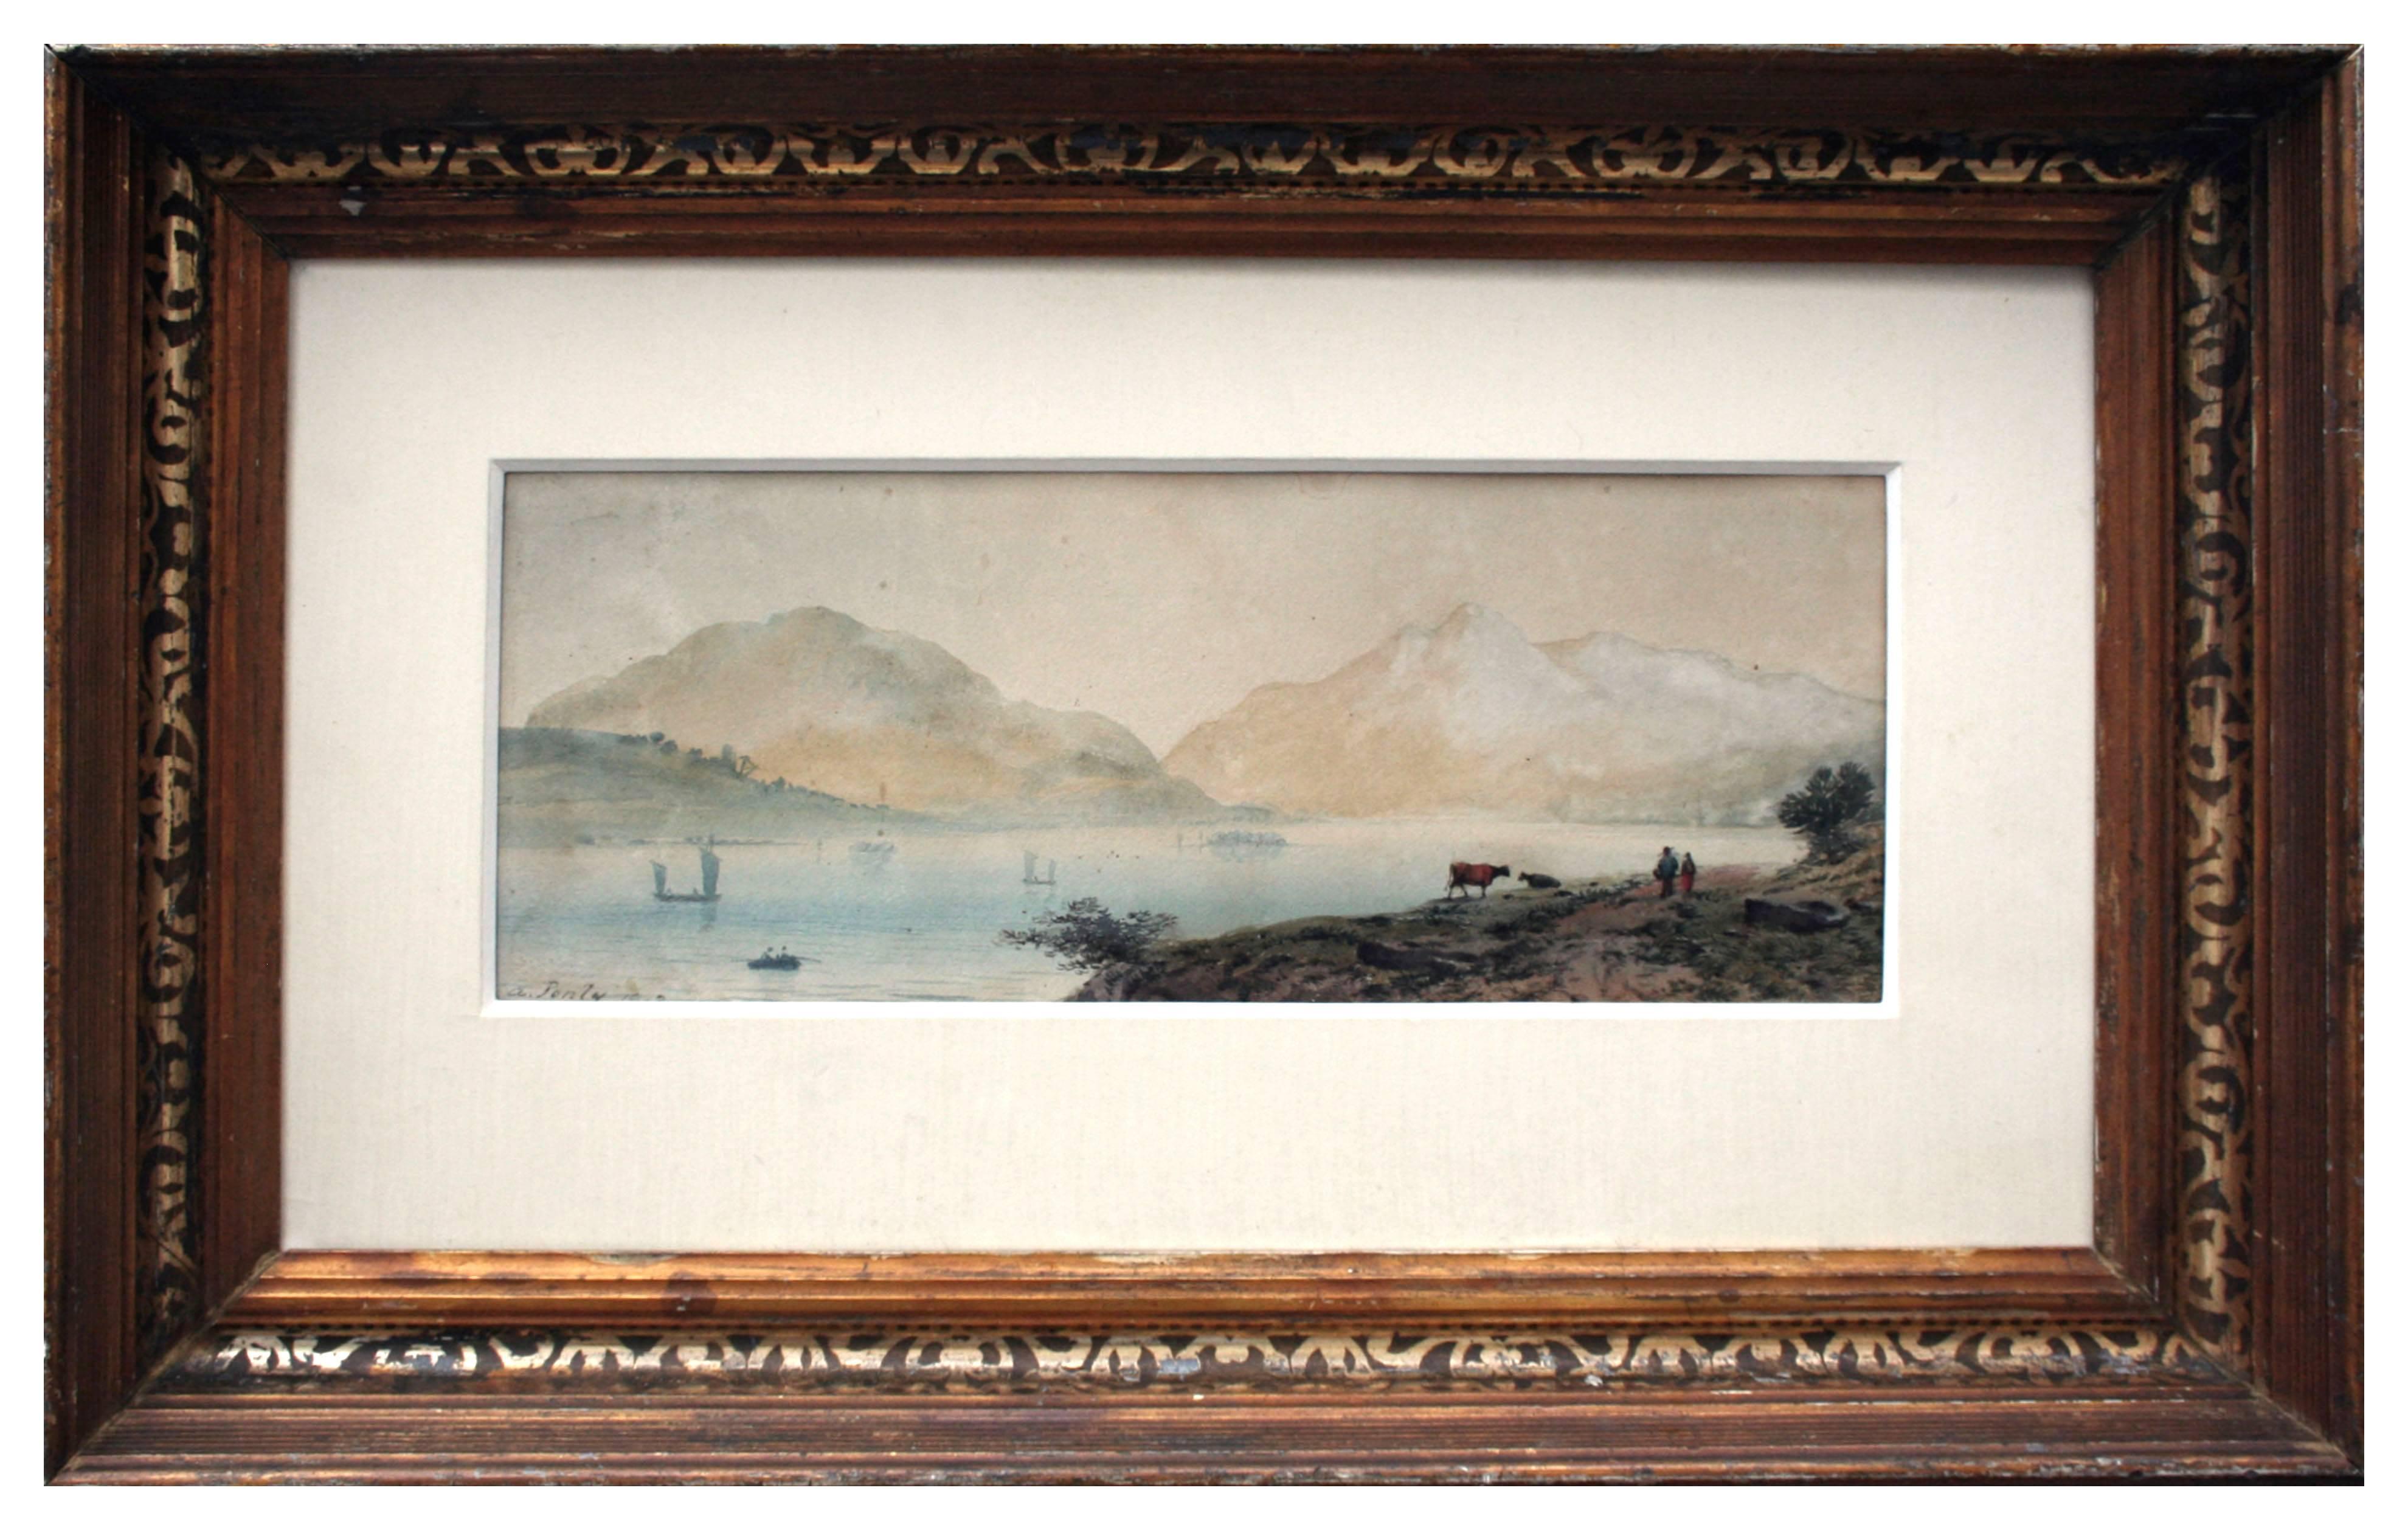 Aaron Edwin Penley Figurative Art - 19th Century Loch Tay Scottish Landscape